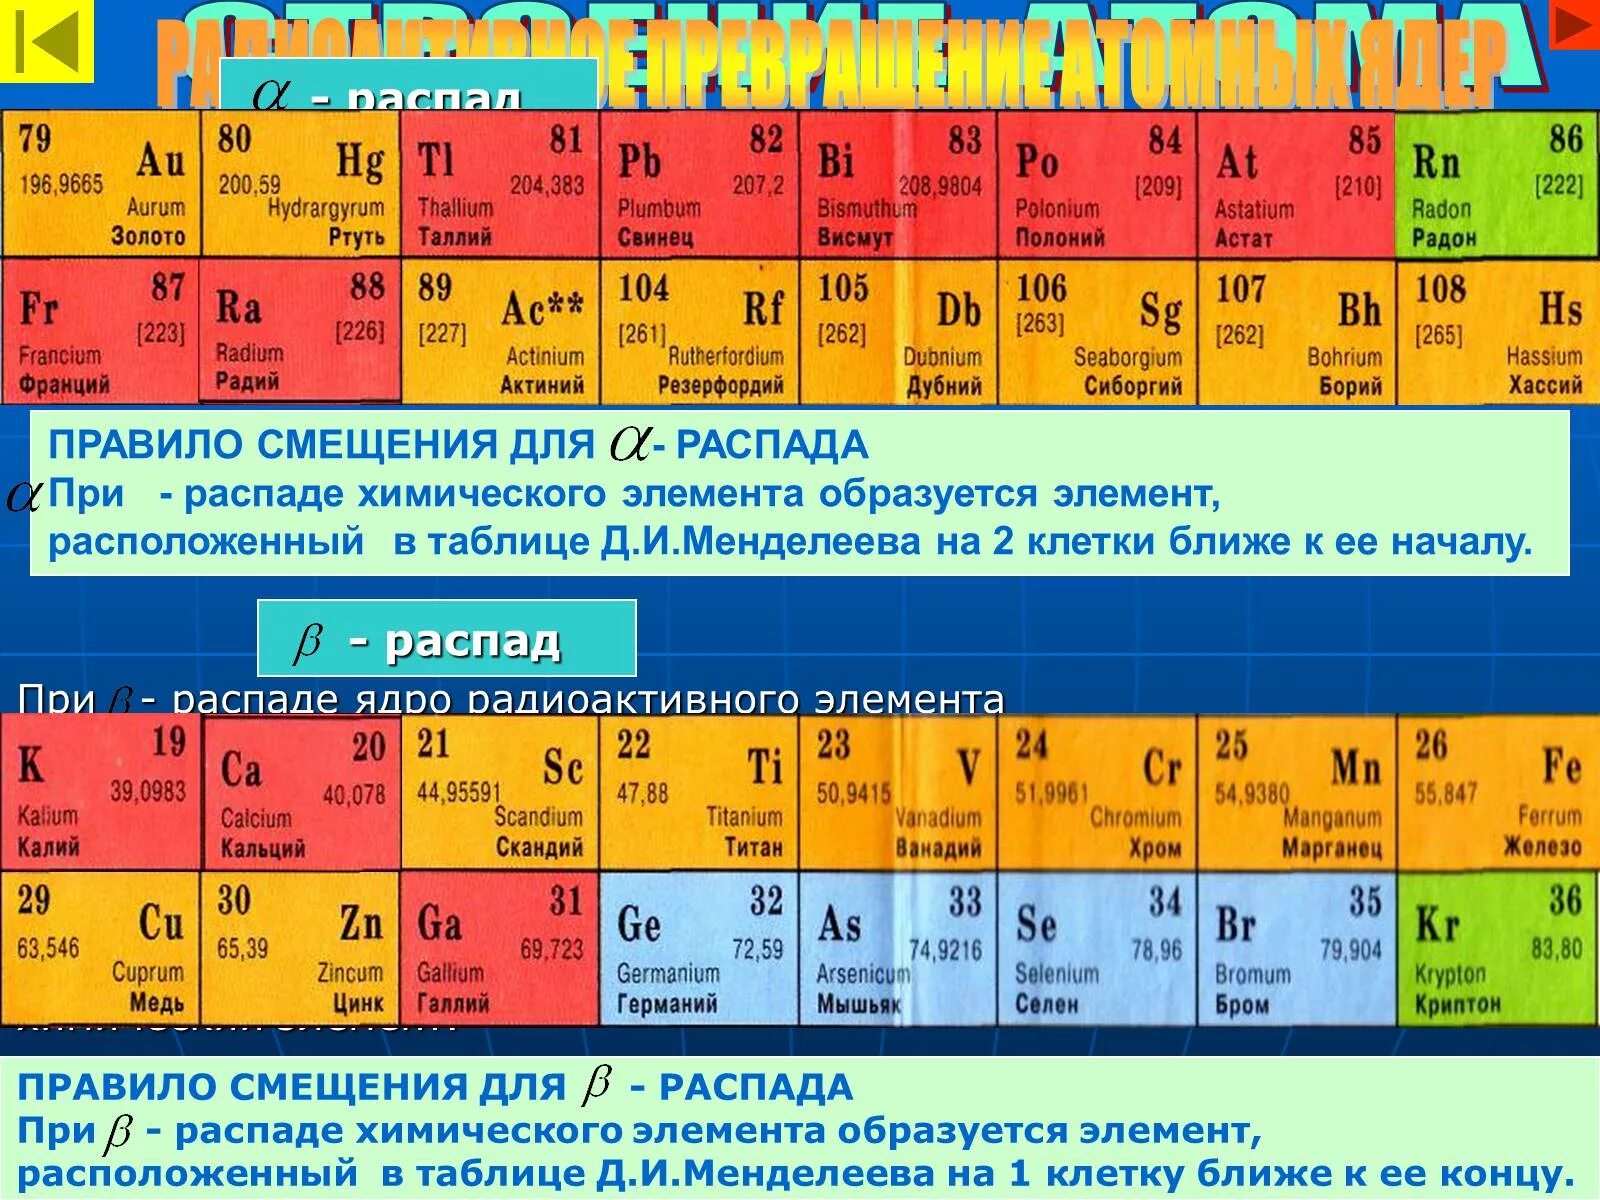 Радиоактивные элементы в таблице Менделеева. Радиоактивные вещества список в таблице Менделеева. Радиоактивные химические элементы в таблице Менделеева. Радиационные элементы таблицы Менделеева. 3 радиоактивный элемент